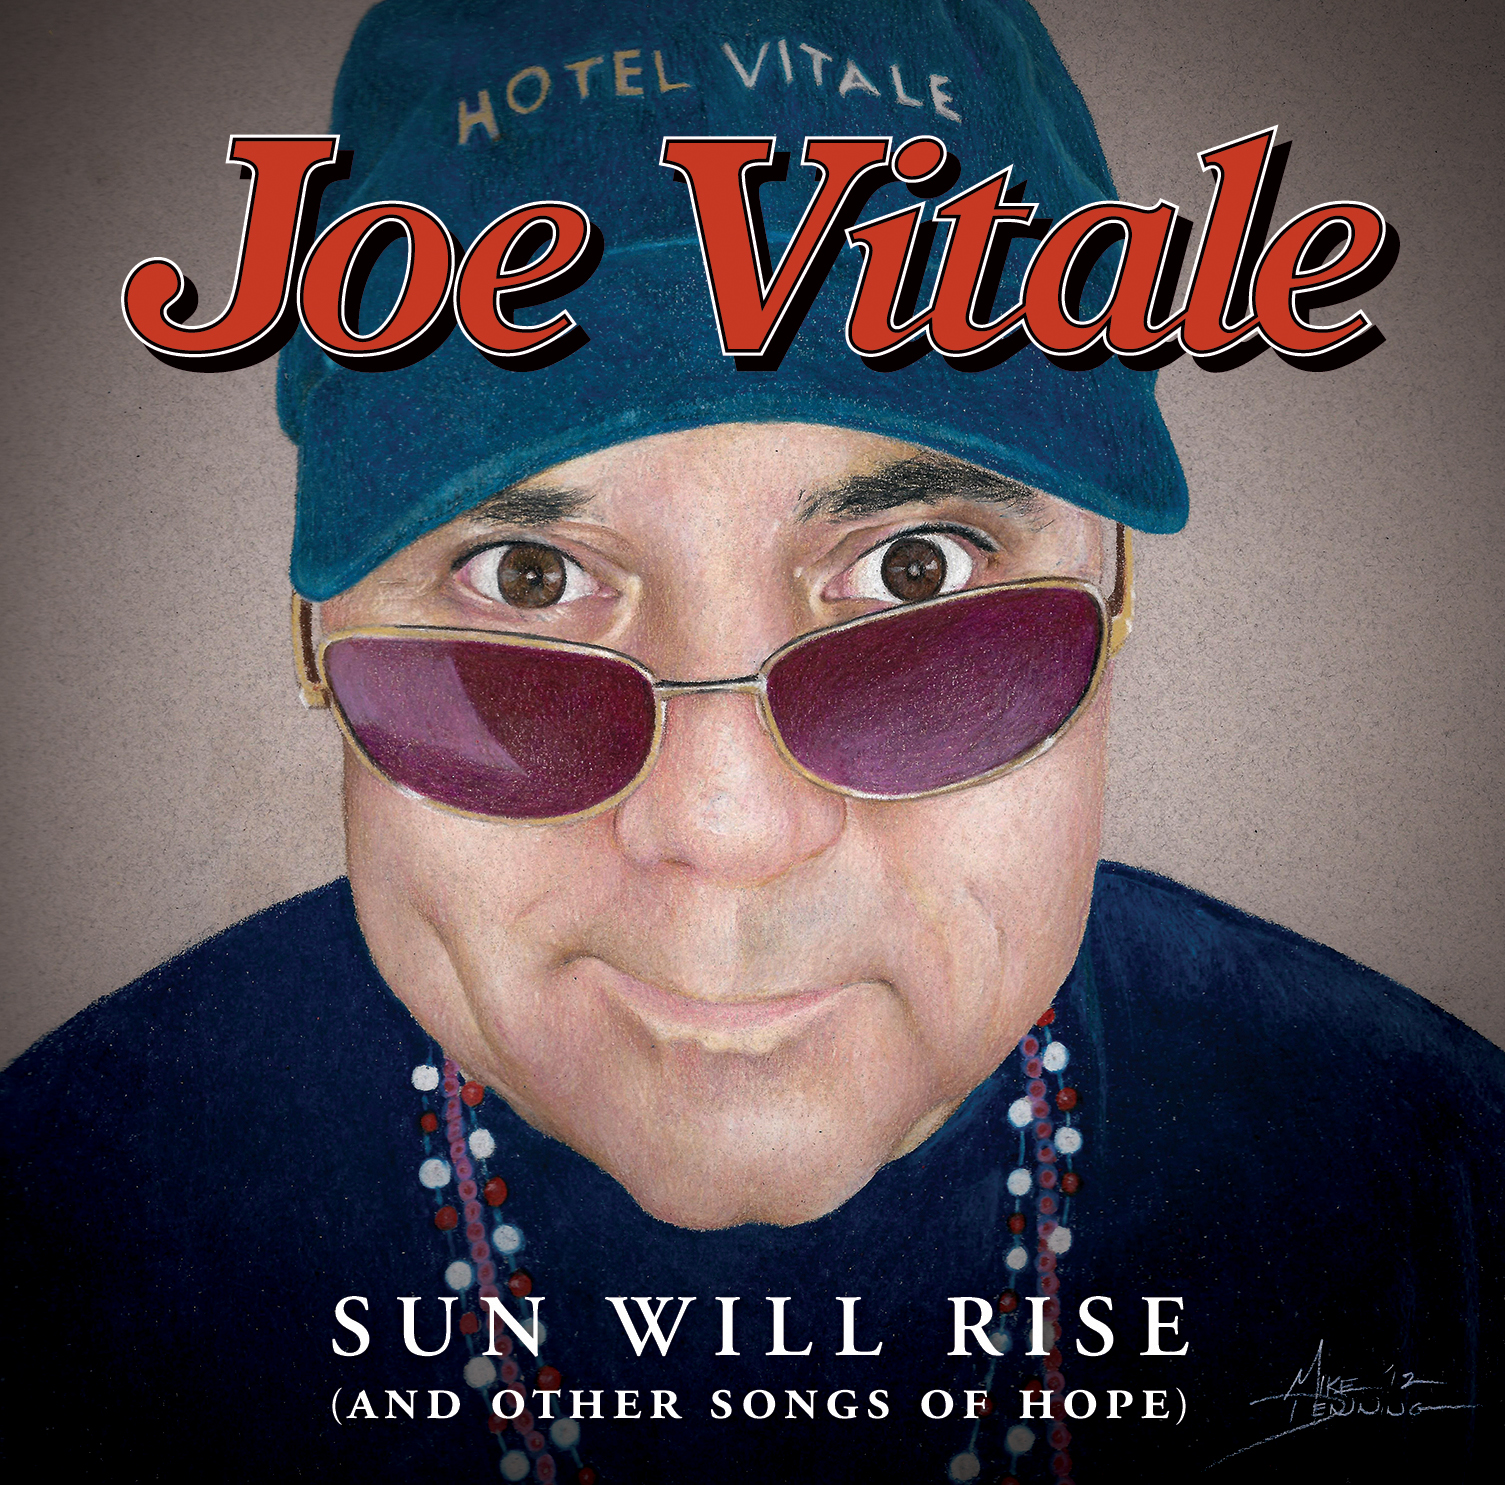 Dr. Joe Vitale, "Secret" movie star, author, speaker, singer-songwriter